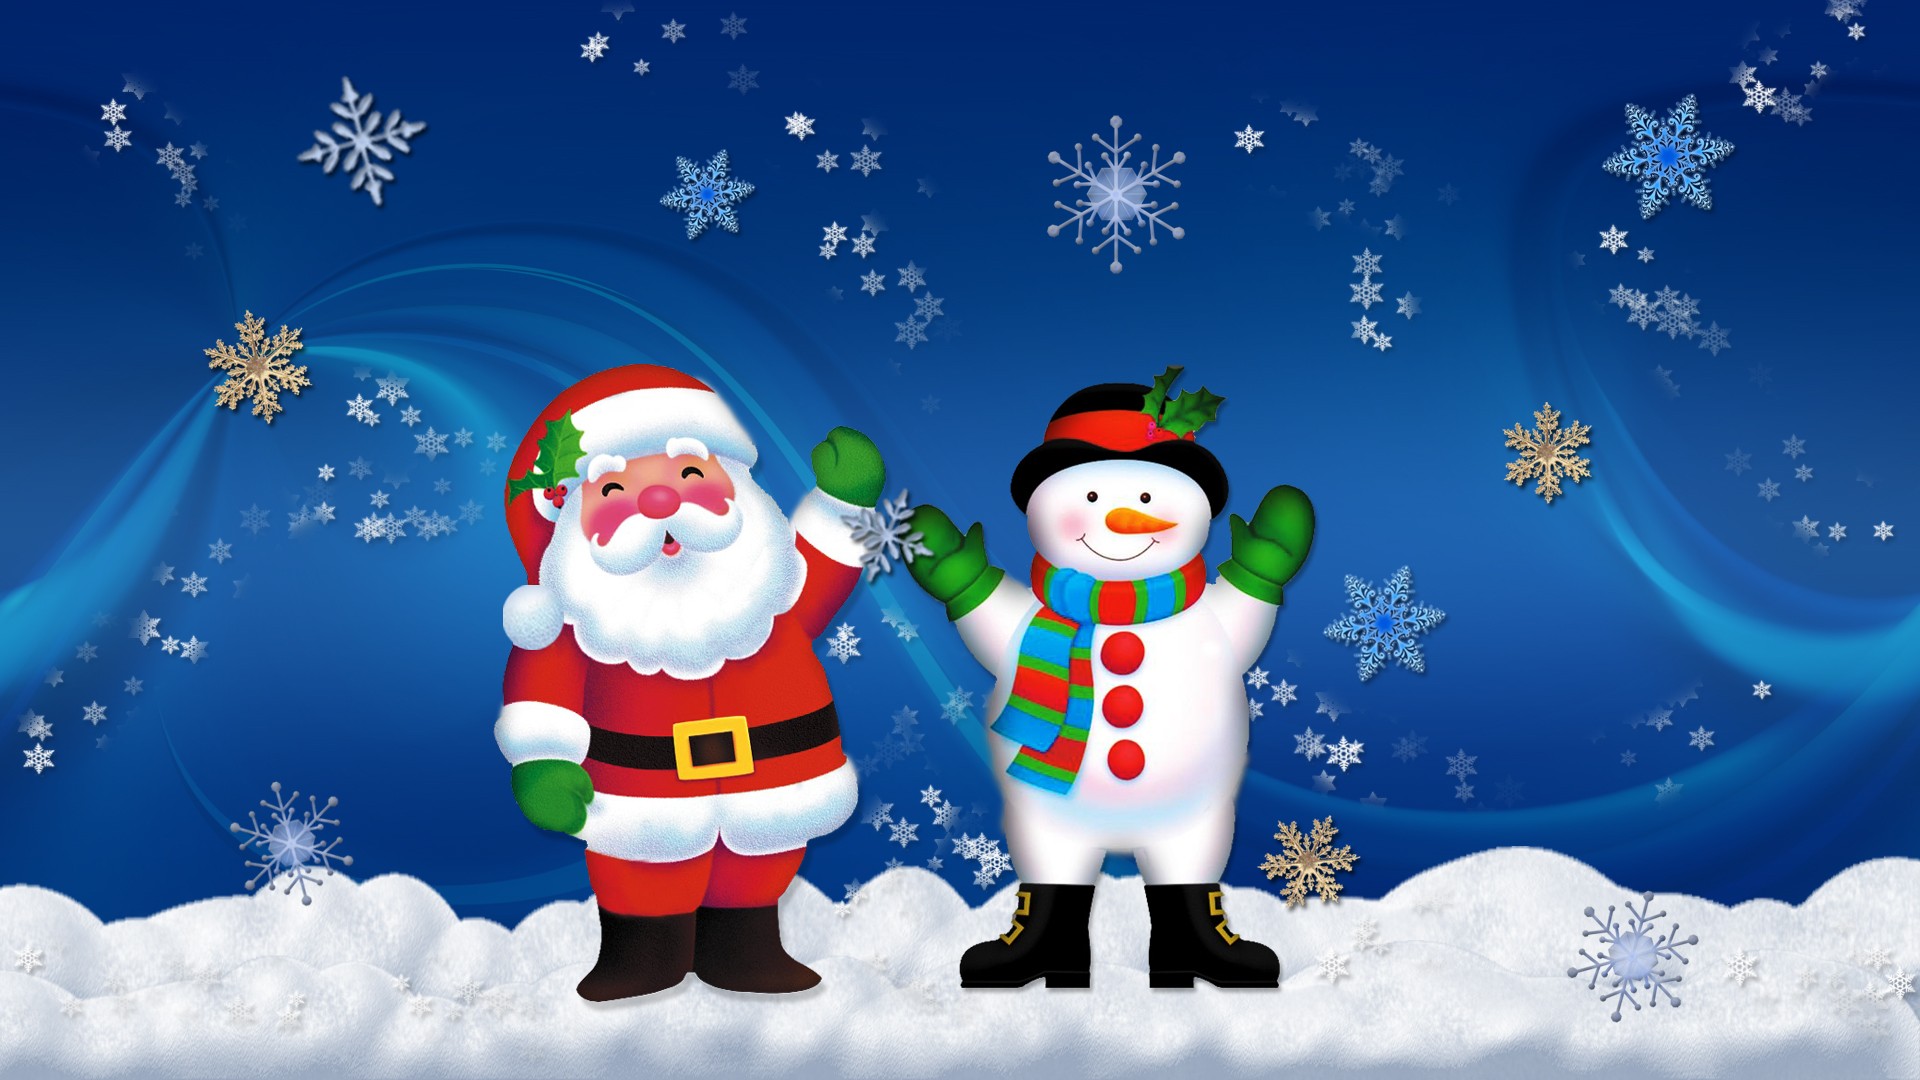 بطاقات تهنئة بالعام الميلادي الجديد 2014 merry christmas and a happy new year 8